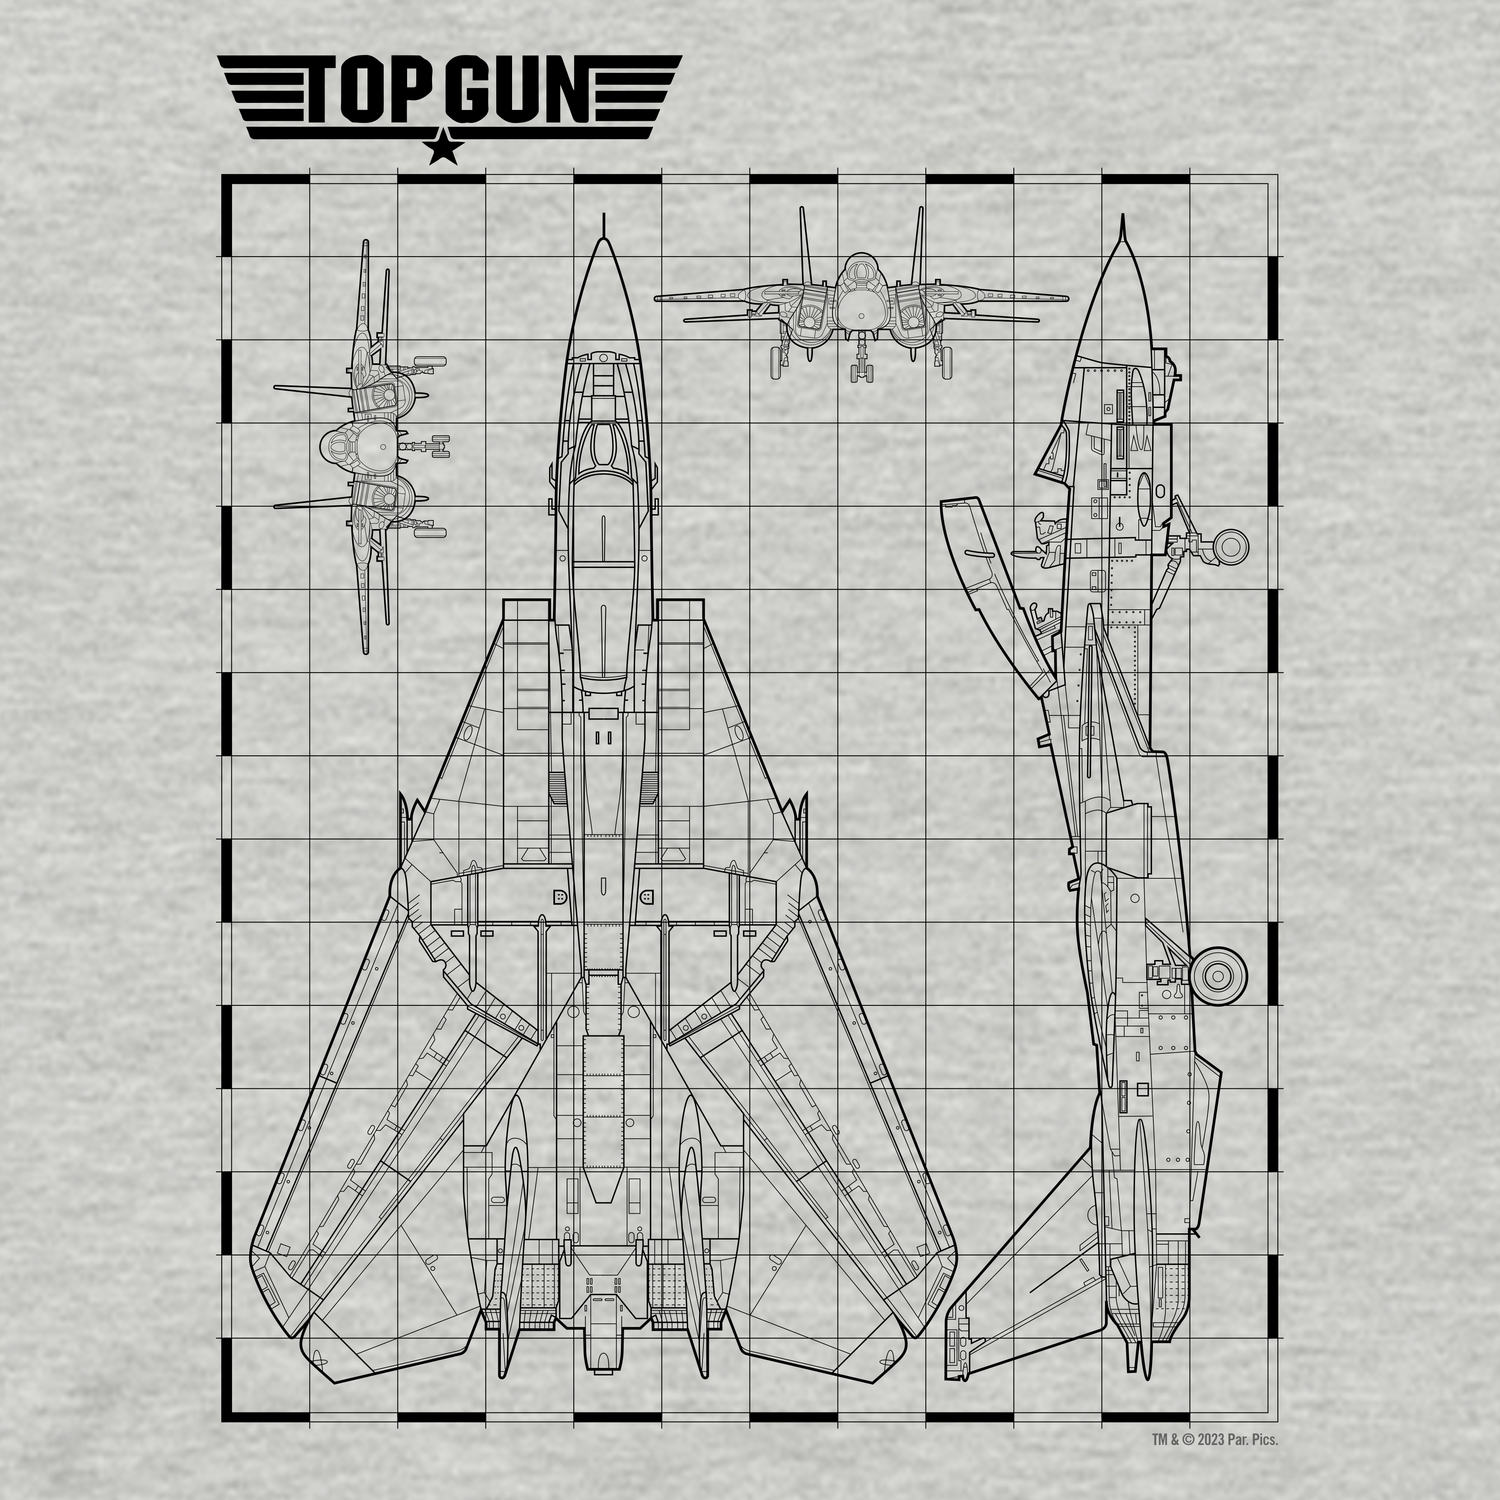 Top Gun Fighter Jet Schematics Unisex Premium T-Shirt